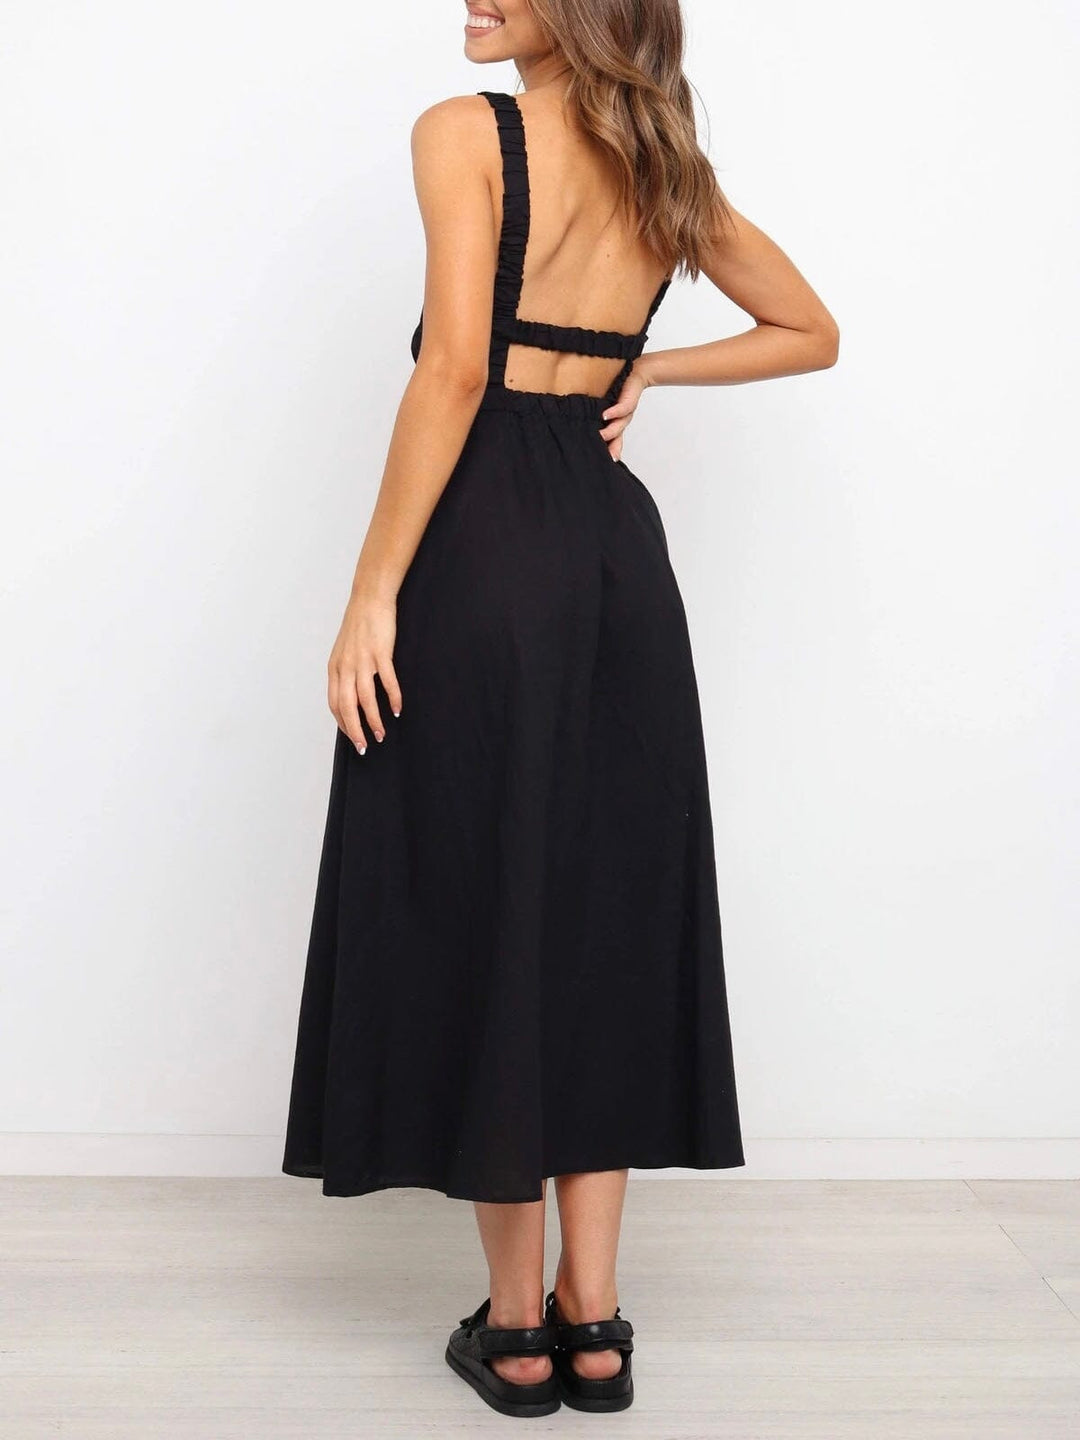 robe dos nu noire longue boheme pour femme vue de dos, mode estivale pour un look élégant et décontracté, modèle elena